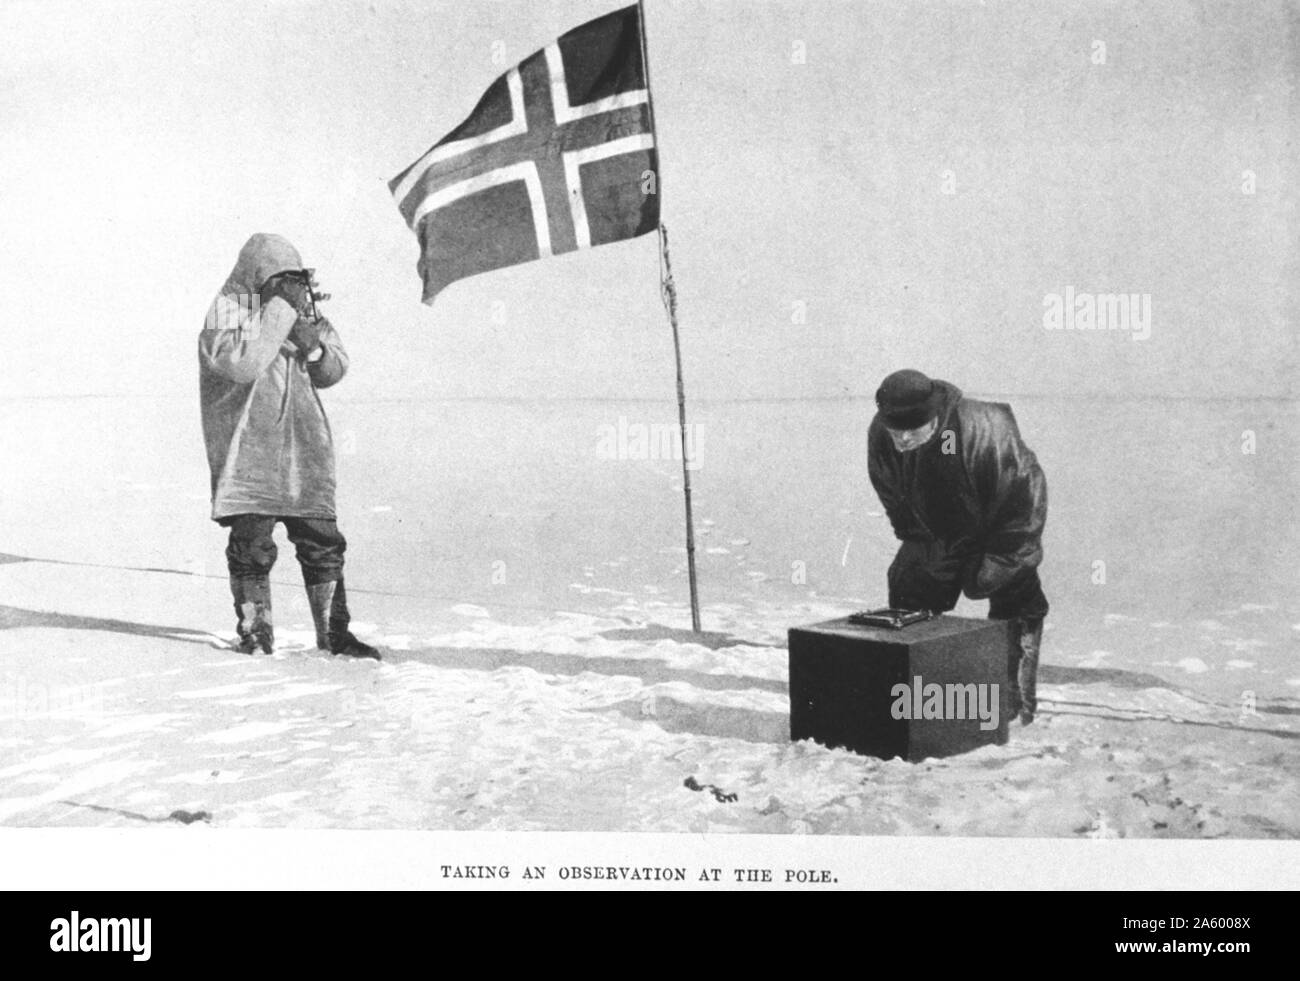 Nehmen eine Beobachtung am Pol. In: "Südpol", von Roald Amundsen, 1872-1928 Stockfoto